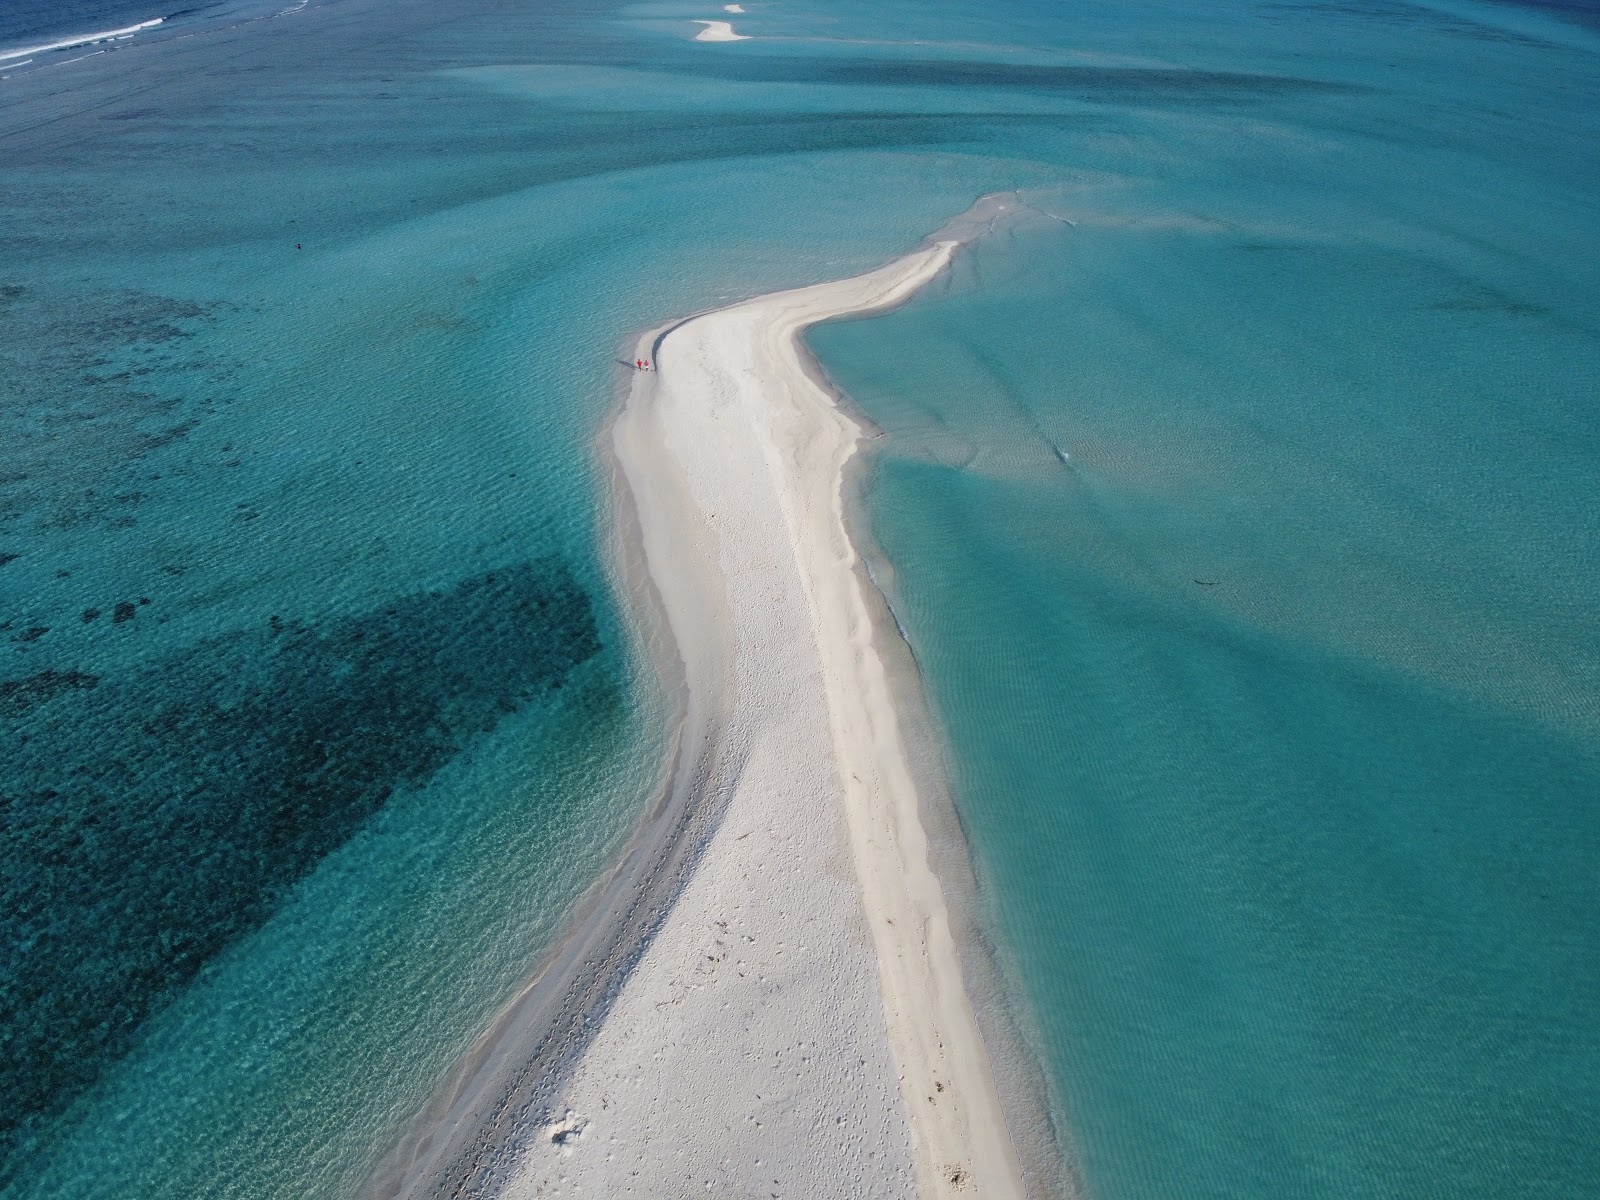 Fotografija Fenfushee Island priljubljeno mesto med poznavalci sprostitve